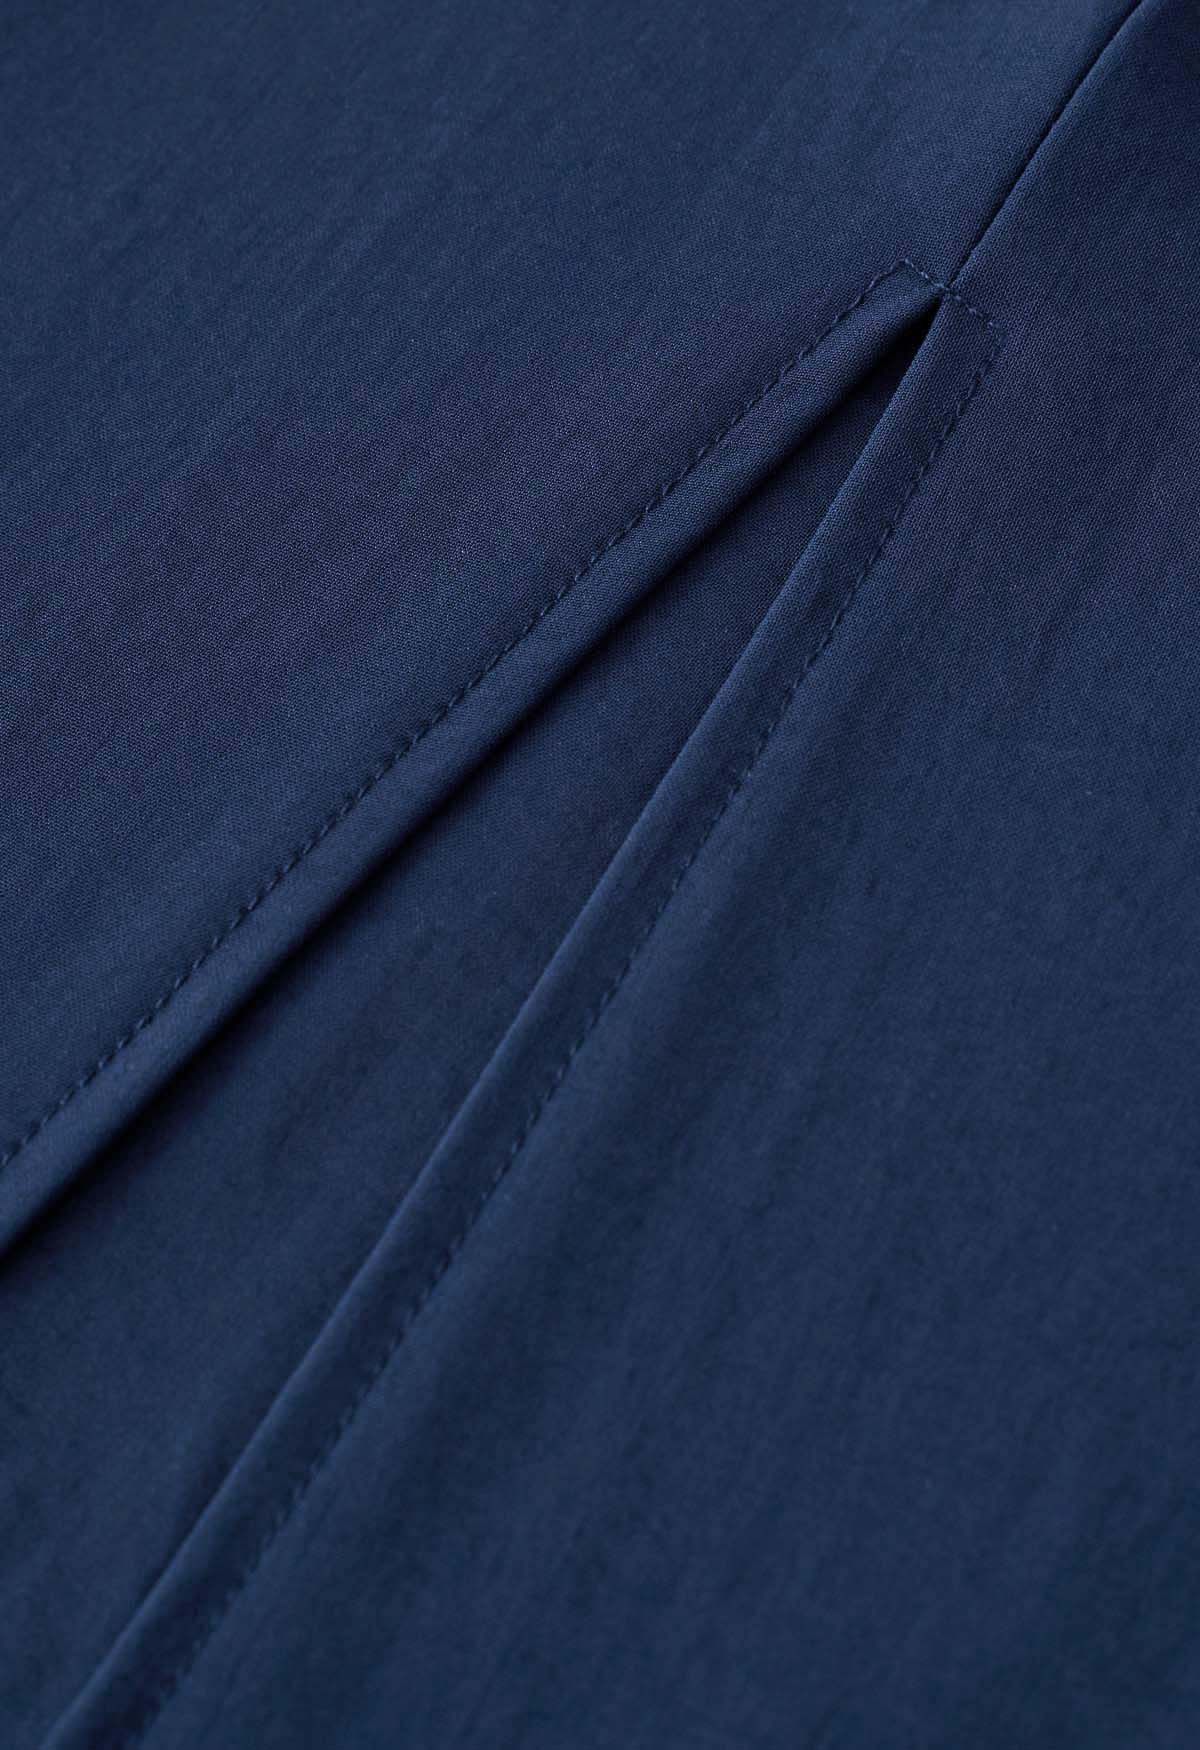 Cami-Kleid mit Rüschensaum und Schnürung an den Schultern in Marineblau